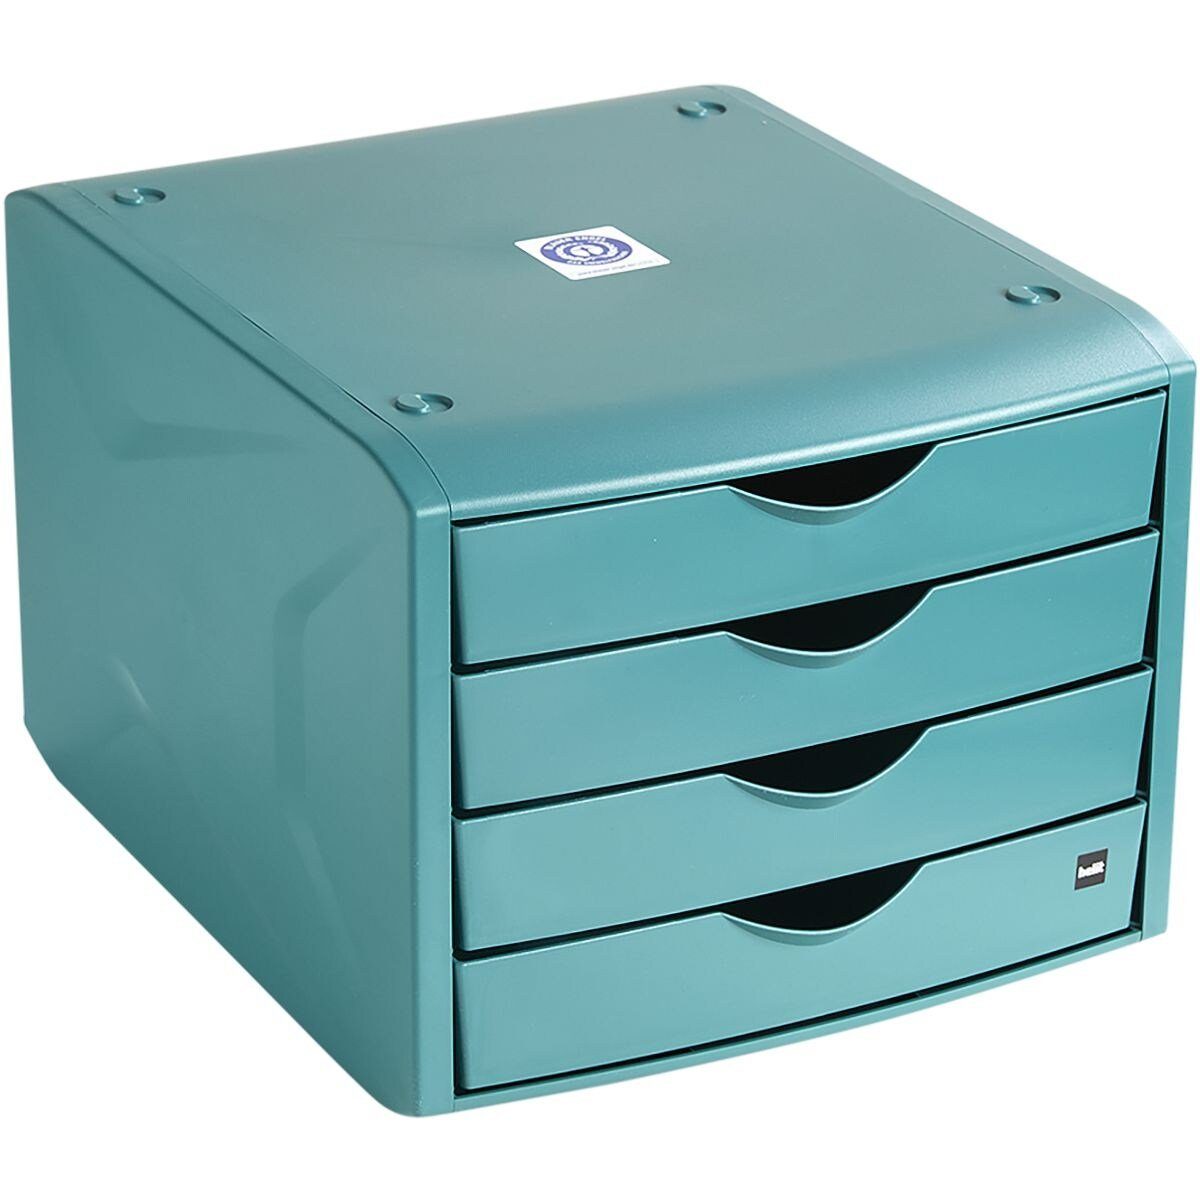 Schubladenbox Recycling-Kunststoff 4 grün chameleon, HELIT stapelbar, green the mit geschlossen, Schubladen,